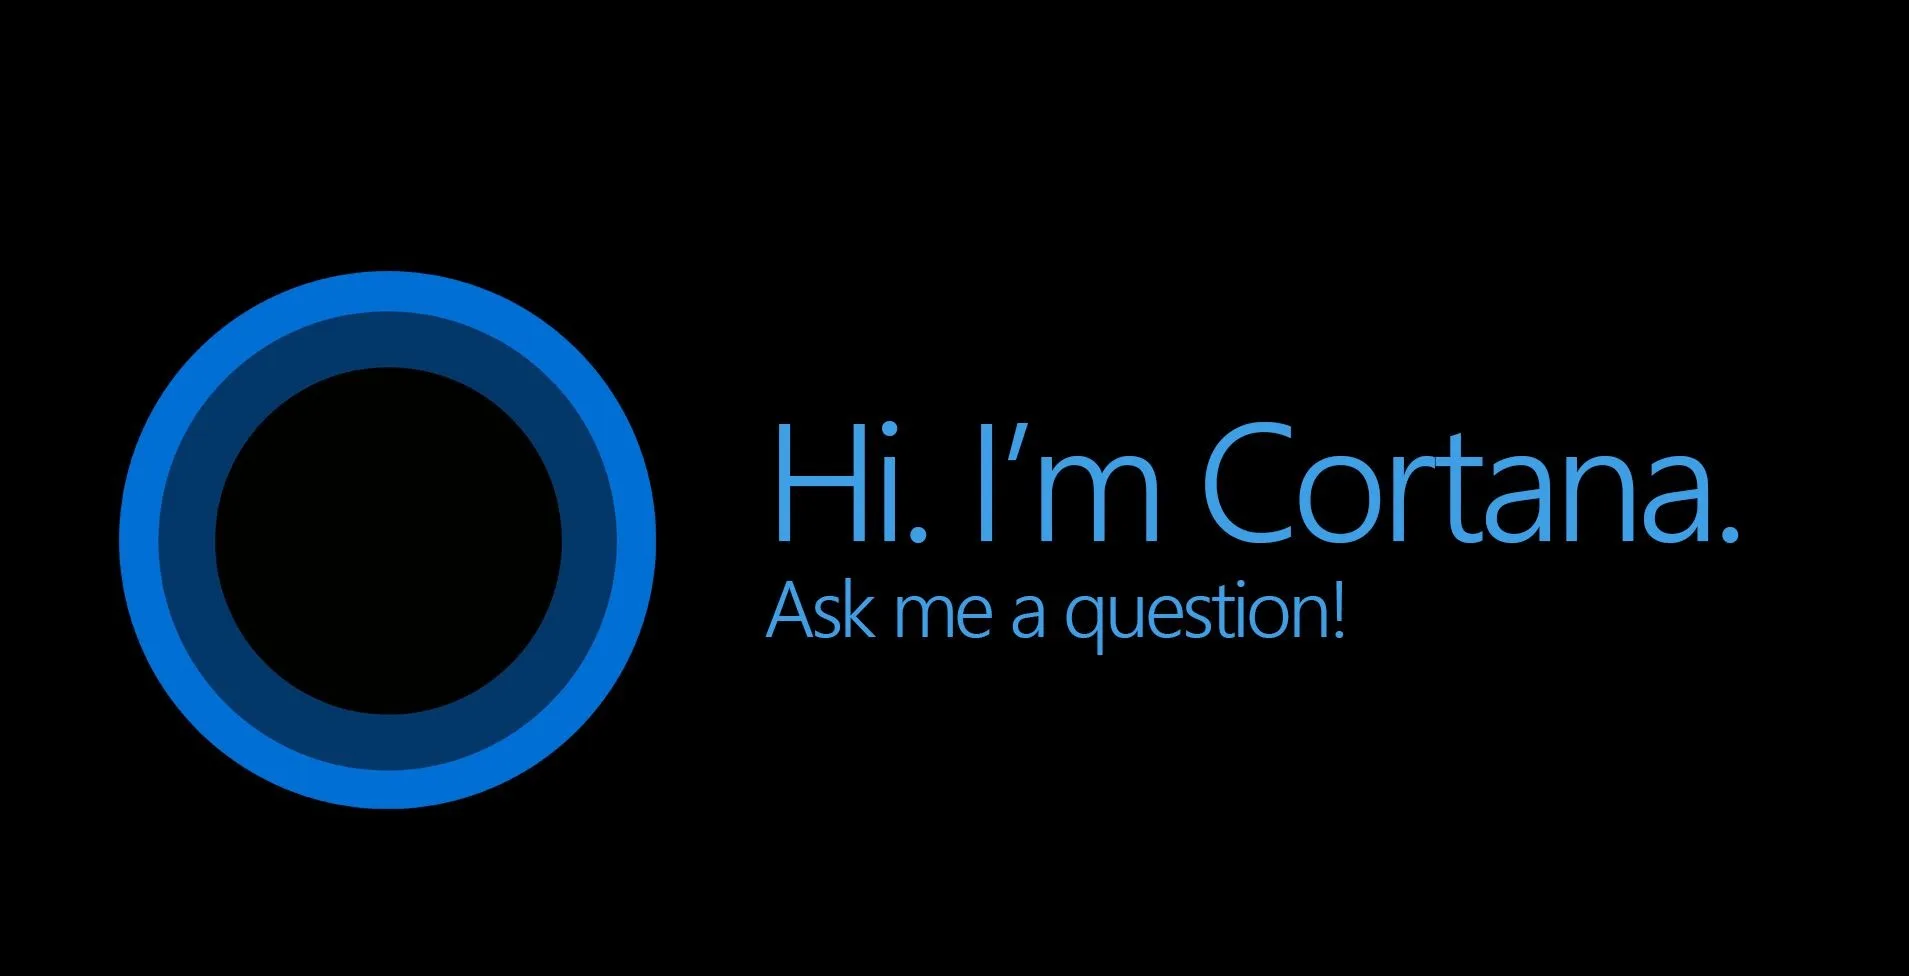 Cortana Microsoft jpg